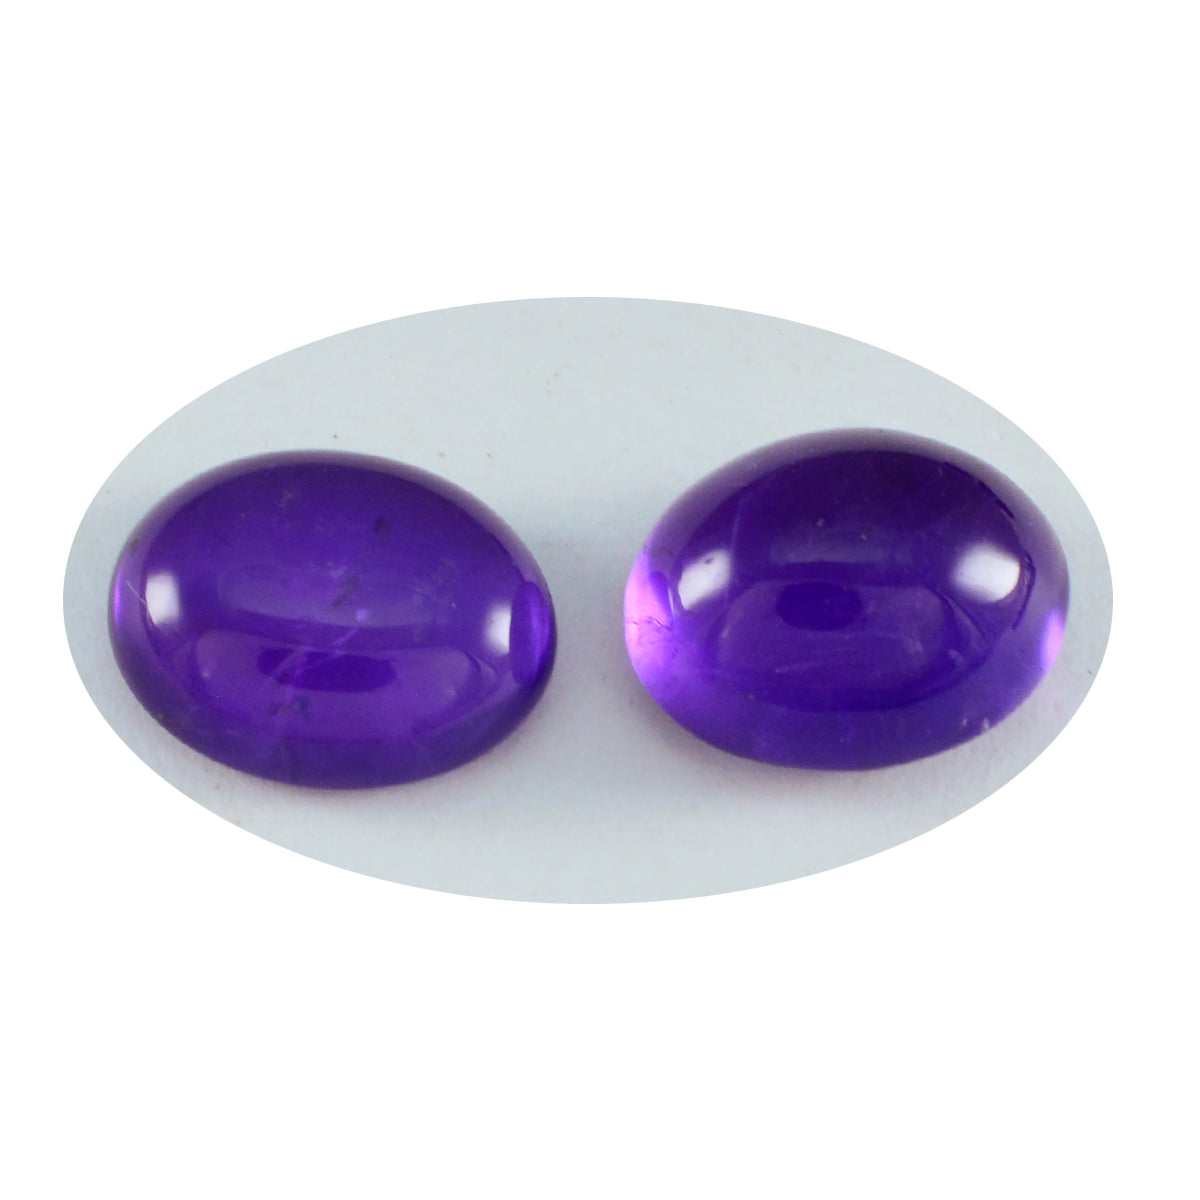 Riyogems 1PC Purple Amethyst Cabochon 9x11 mm Oval Shape handsome Quality Loose Gemstone